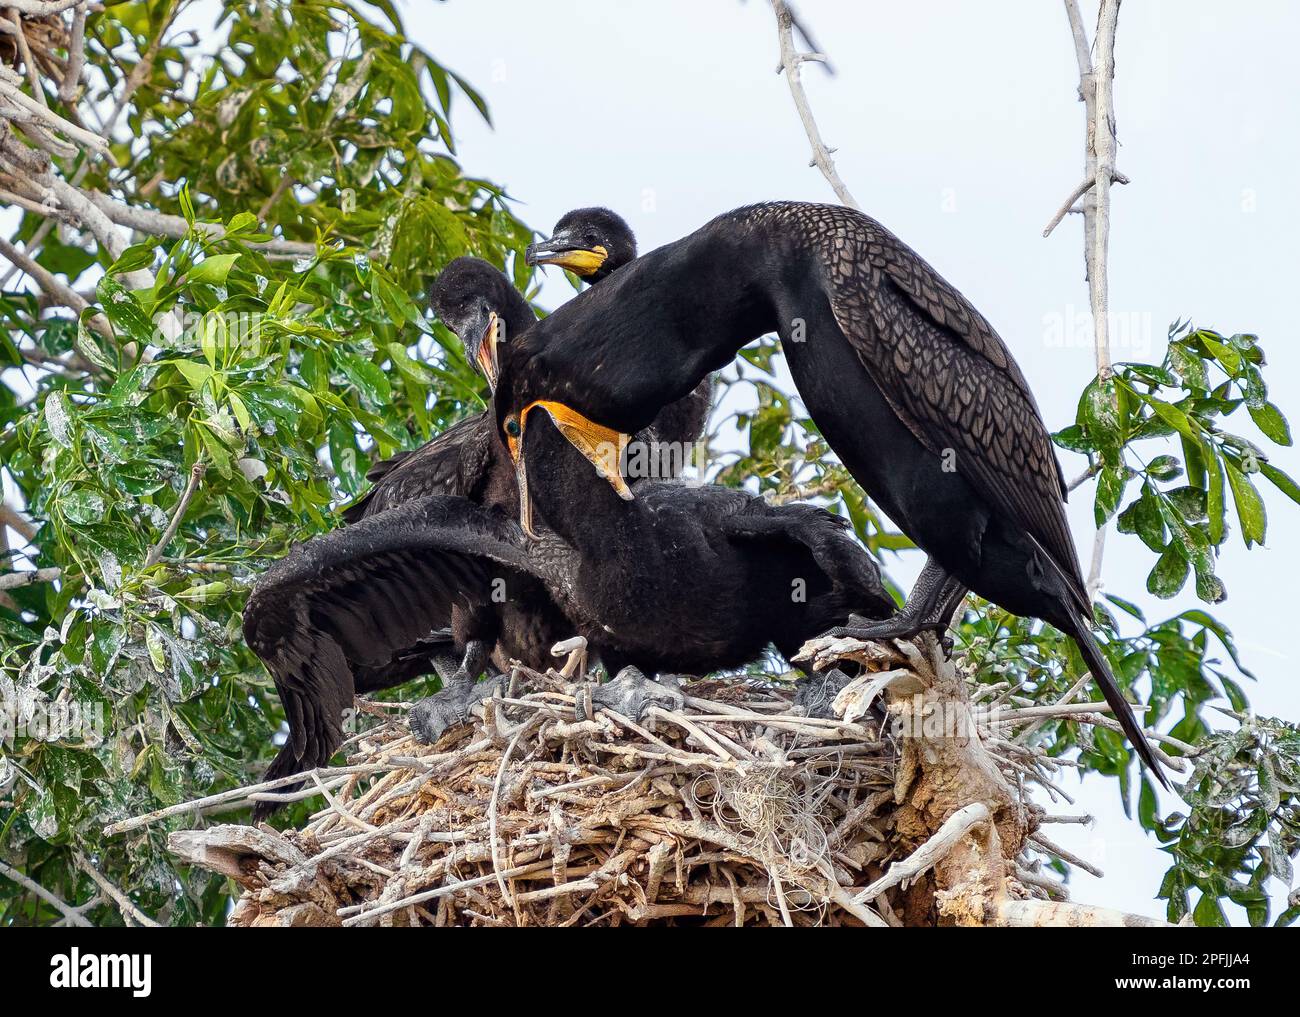 Primer plano del comportamiento de alimentación de los cormoranes de doble cresta en su sitio de nido natural. Padre está alimentando a un pollito mientras que un segundo observa. Foto de stock